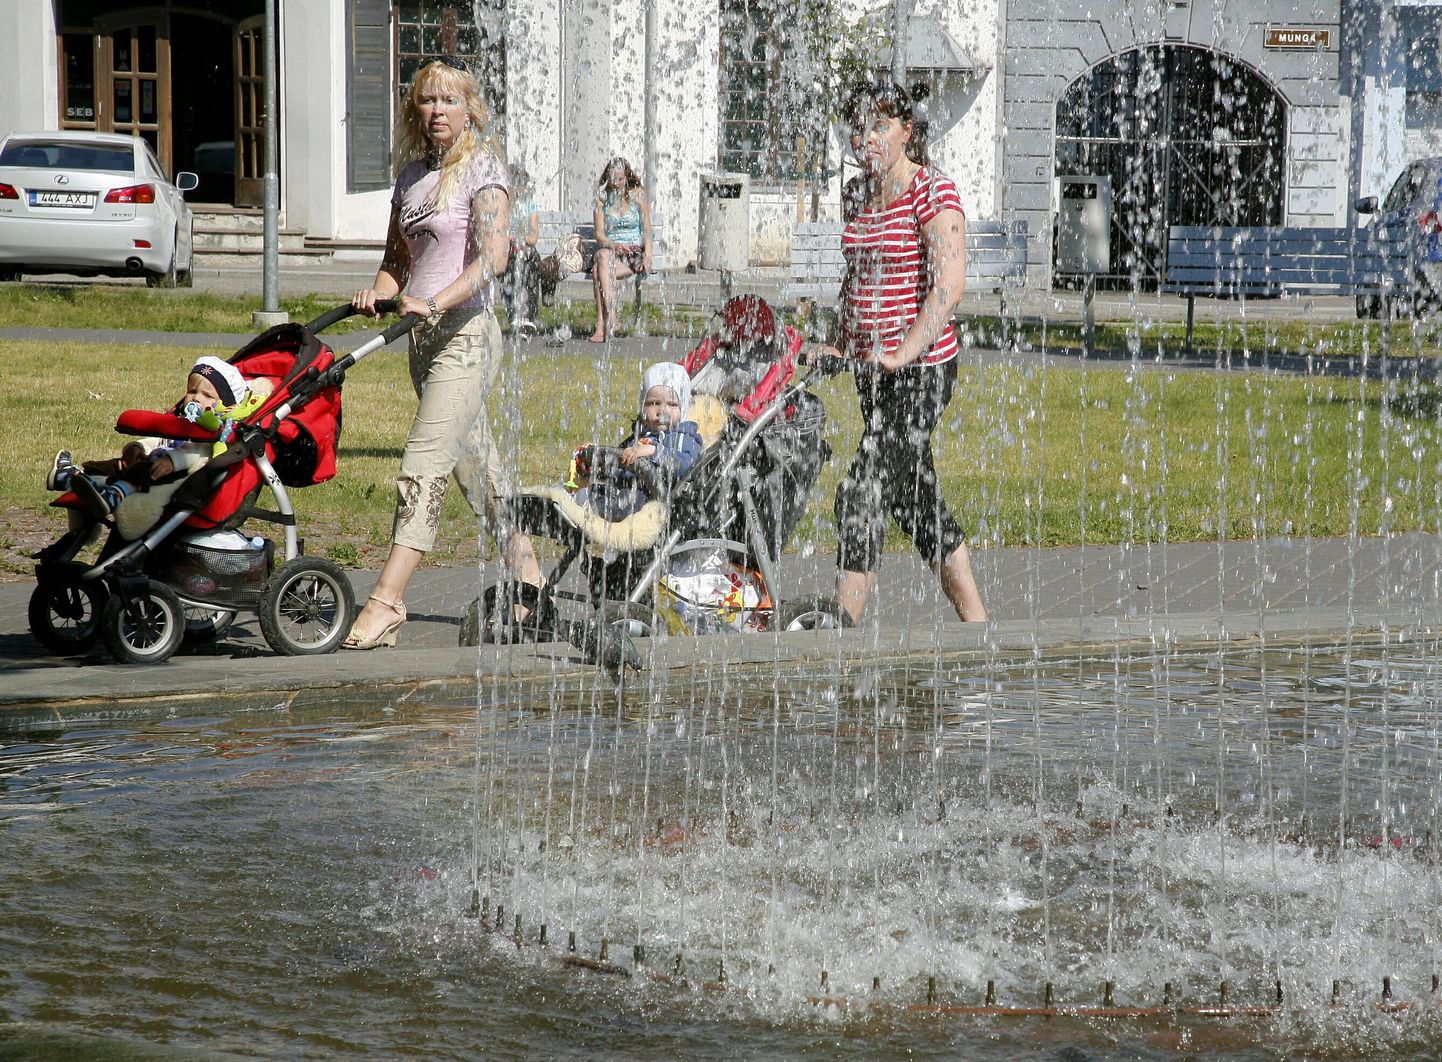 Lastekaitsepäeval toimub Pärnus järjekordne titekärude paraad. Pilt on illustratiivne.